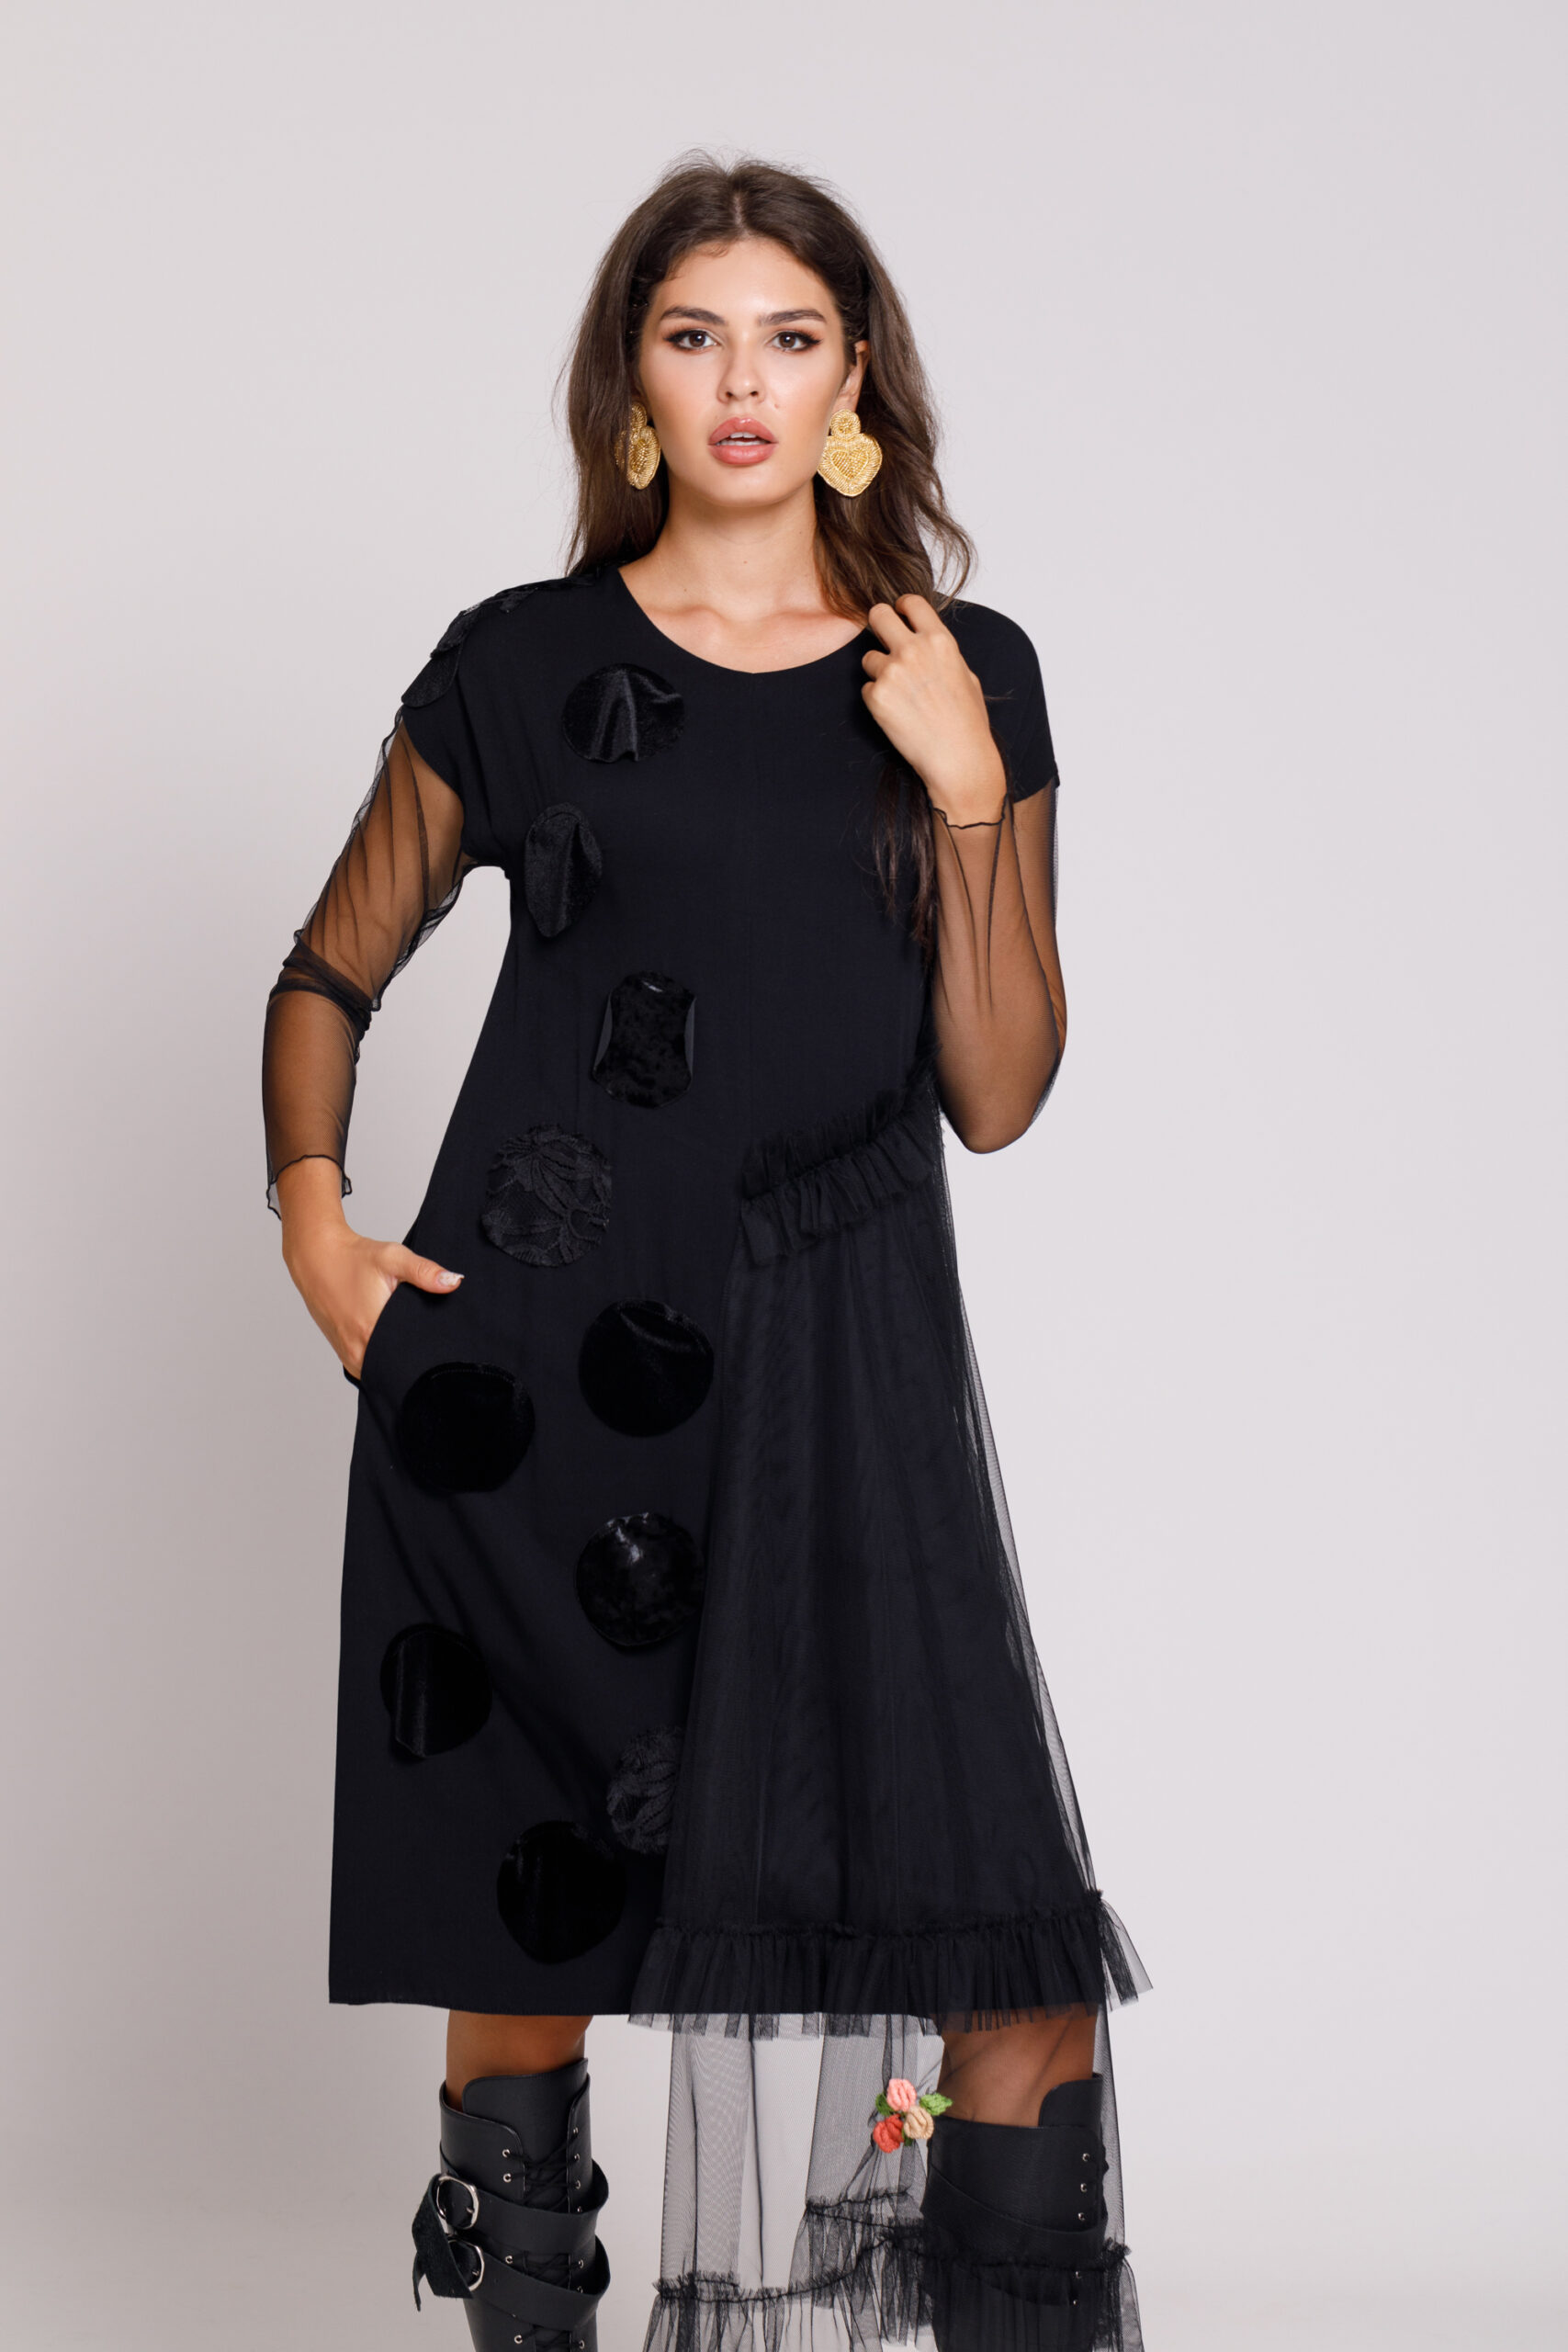 Rochie RAELLE eleganta neagra din viscoza si tul. Materiale naturale, design unicat, cu broderie si aplicatii handmade